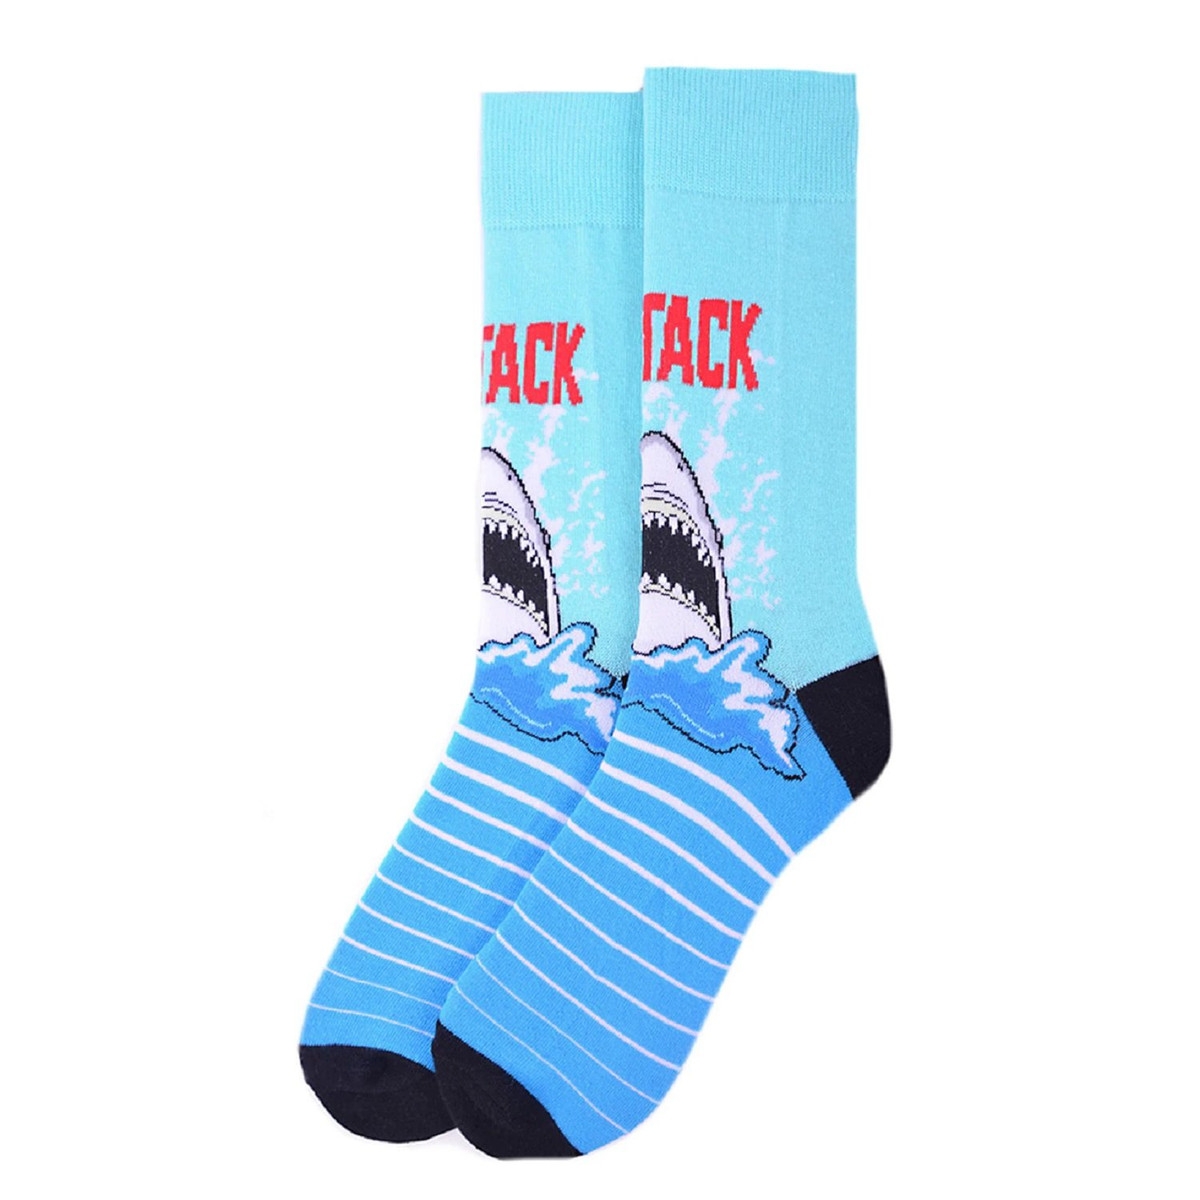 Pair of Men's Shark Attack Stripe Crew Novelty Socks - Blue